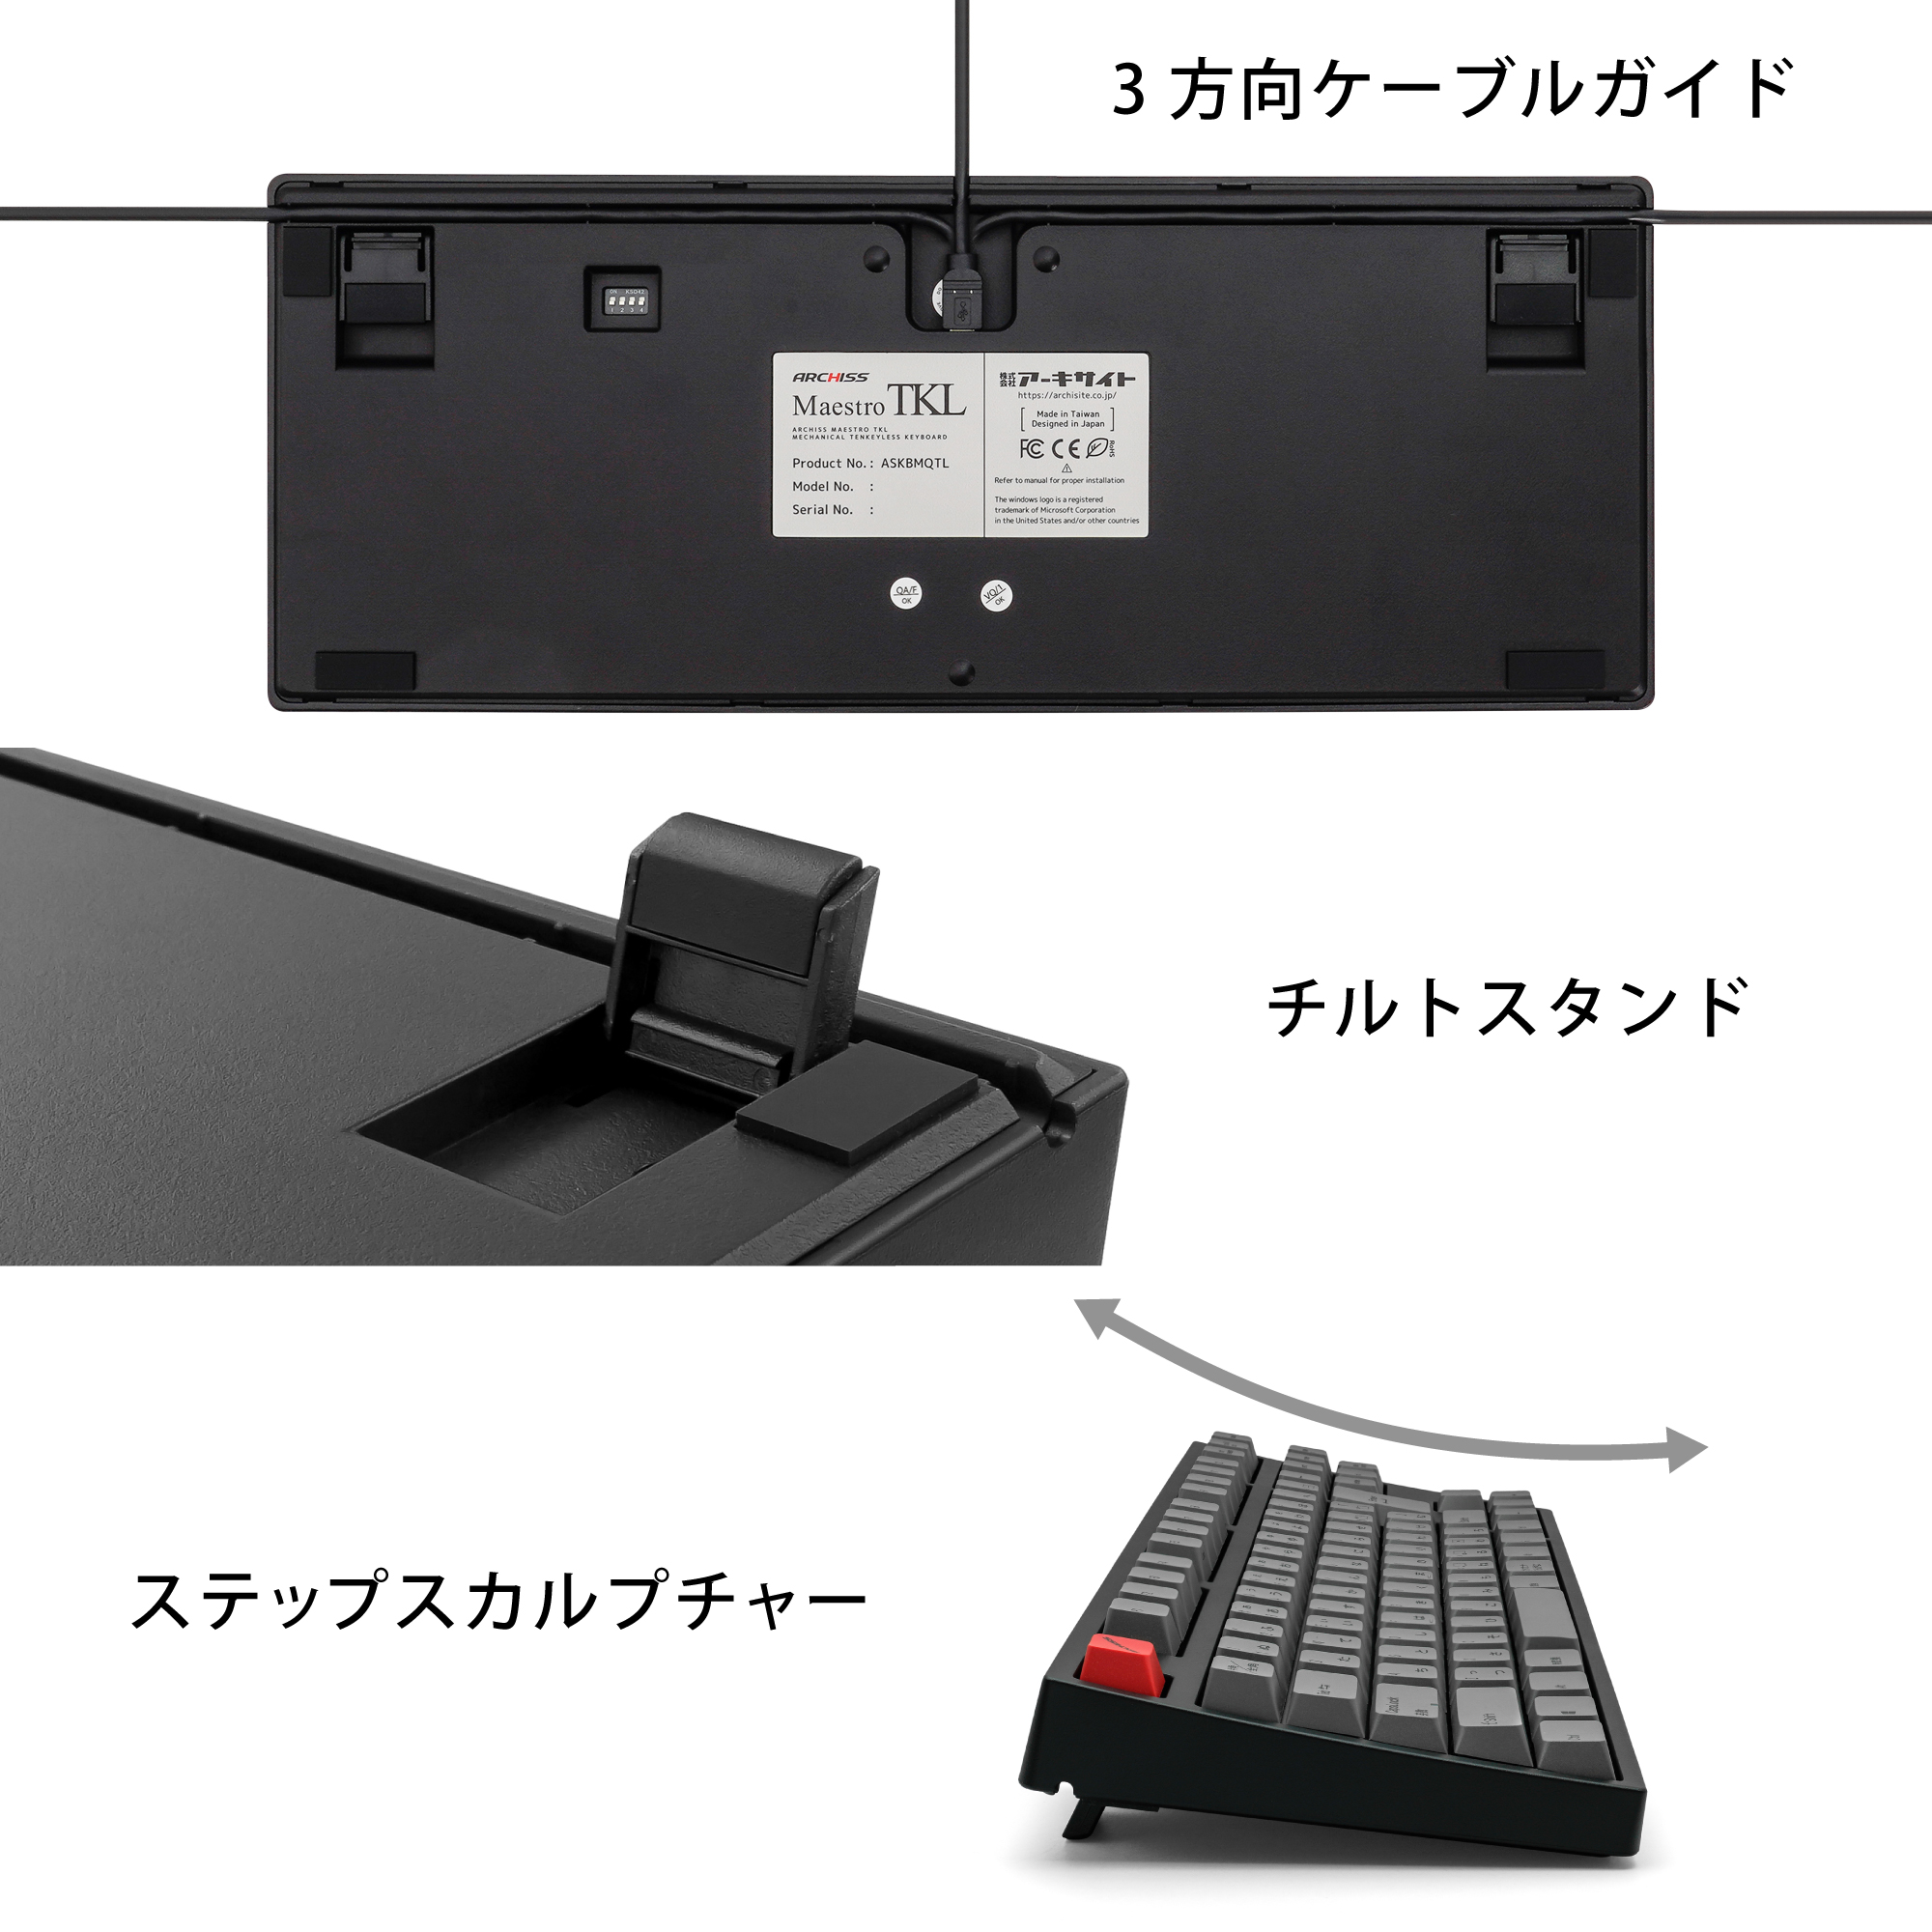 ARCHISS Maestro TKL メカニカルキーボード ワイヤーキープラー付モデル (日本語配列 キー数:91, 茶軸) AS-KBM